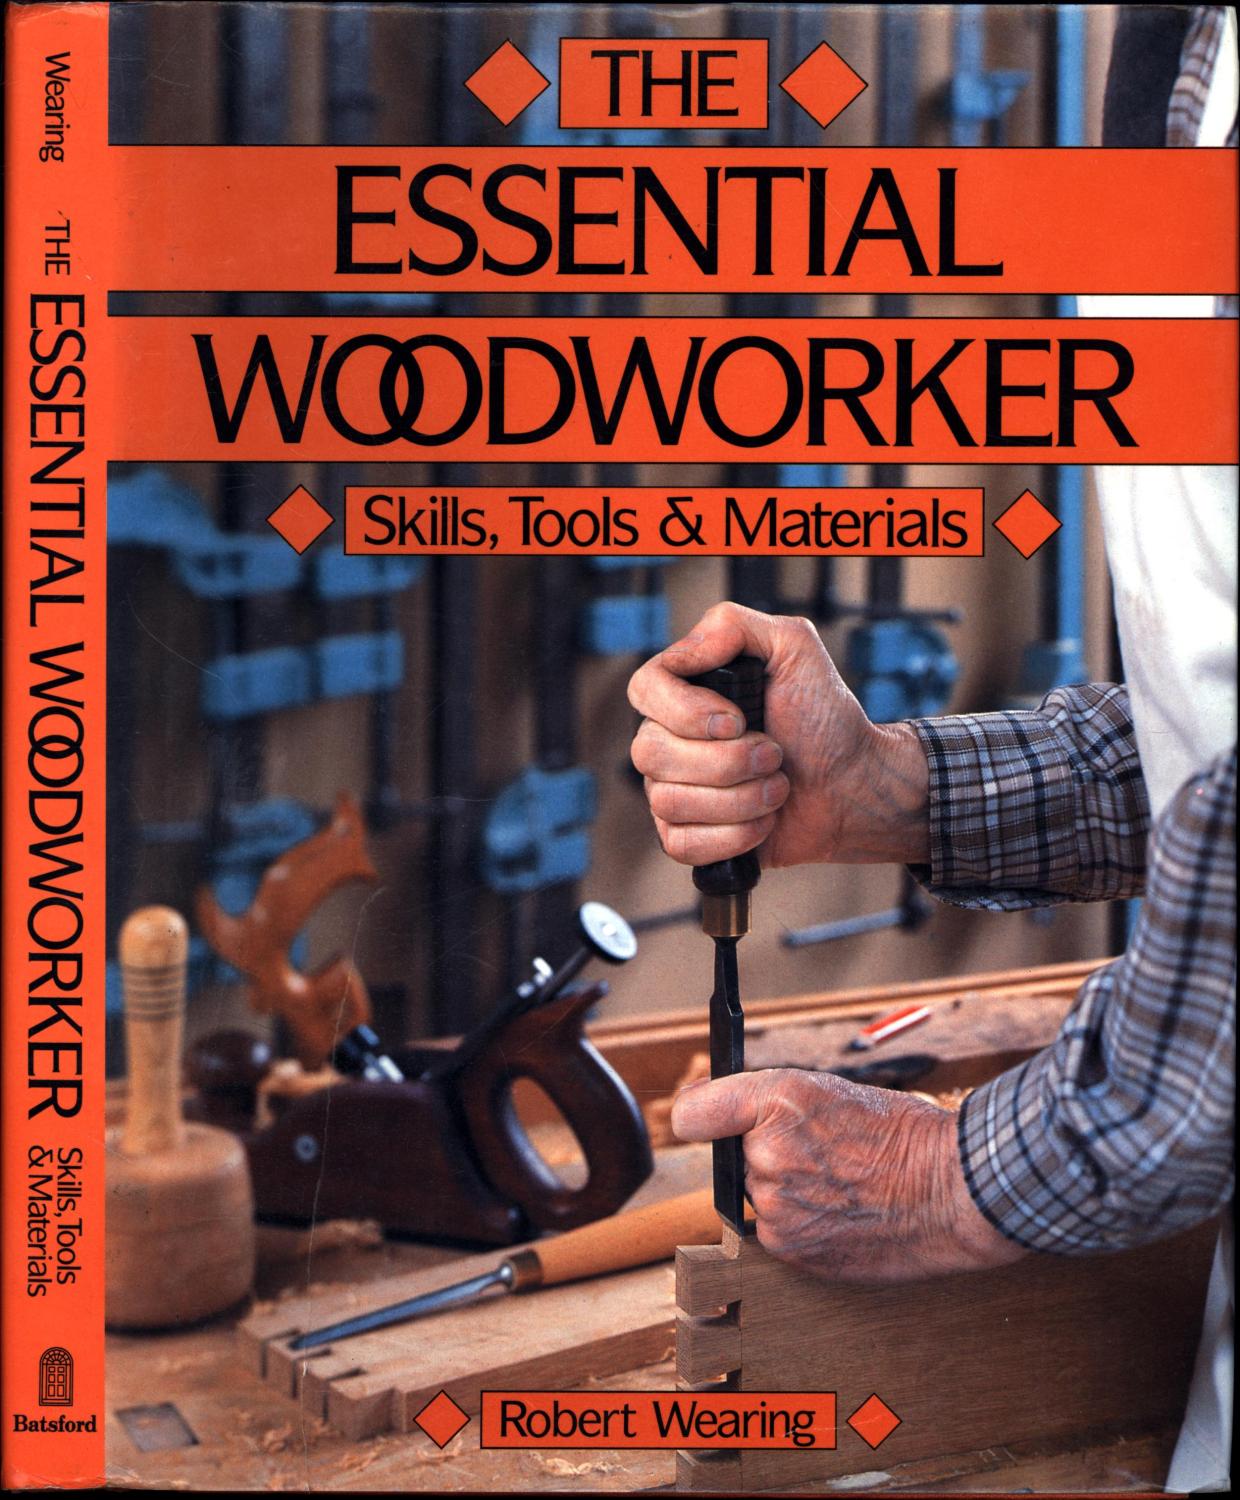 Gunsmithing Simplified No2 Woodwork by Kit Ravenshear 1972 